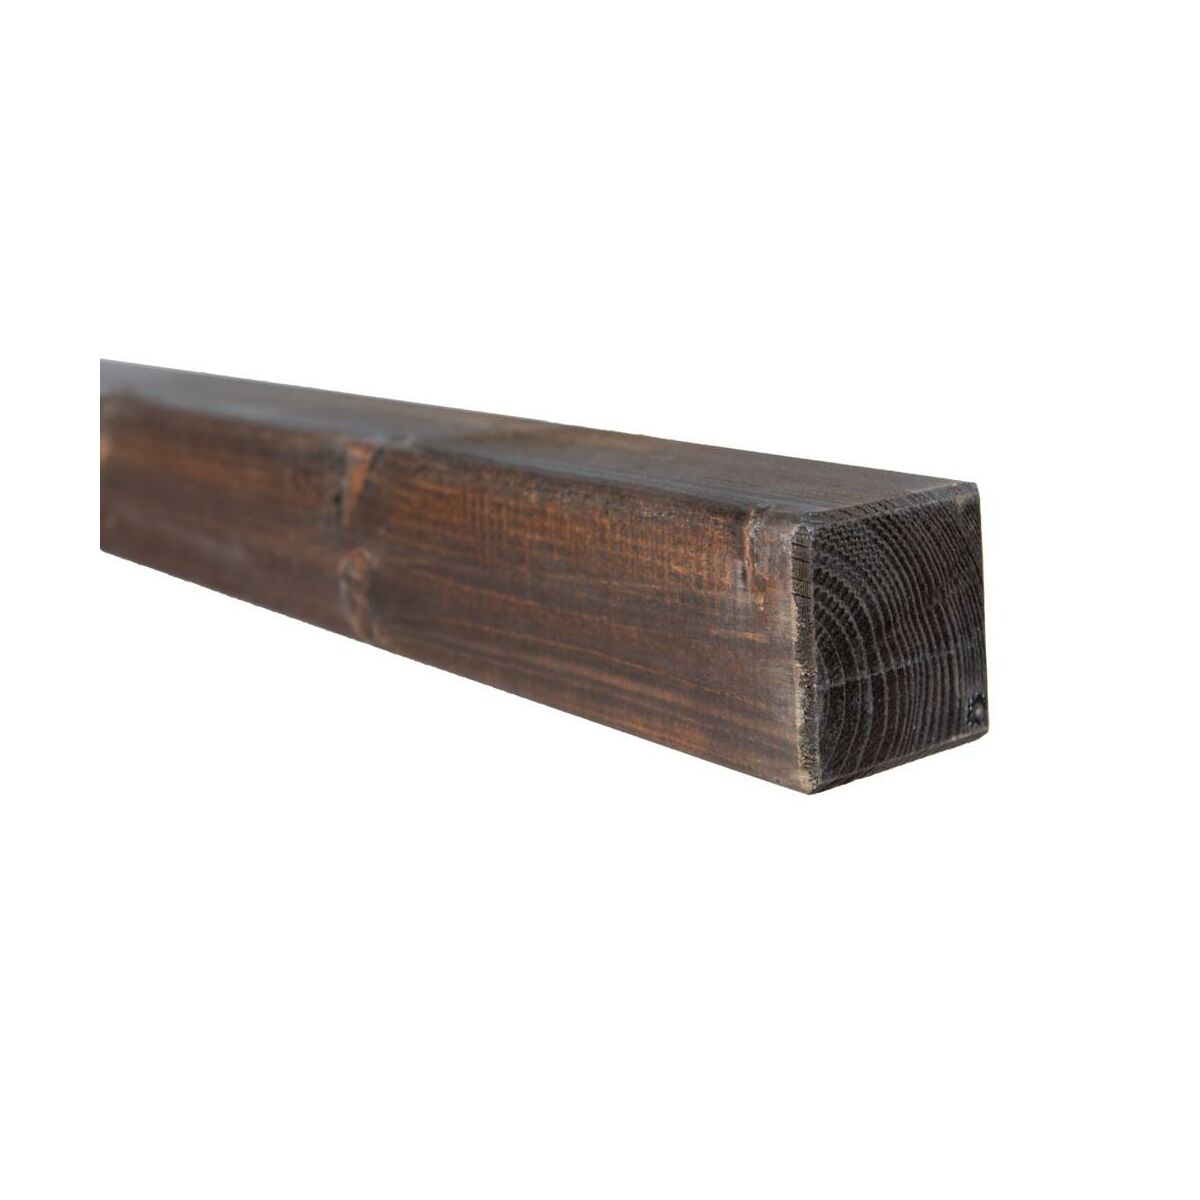 Kantówka drewnianaVictoria 7x7x180 cm czekoladowa Werth-Holz